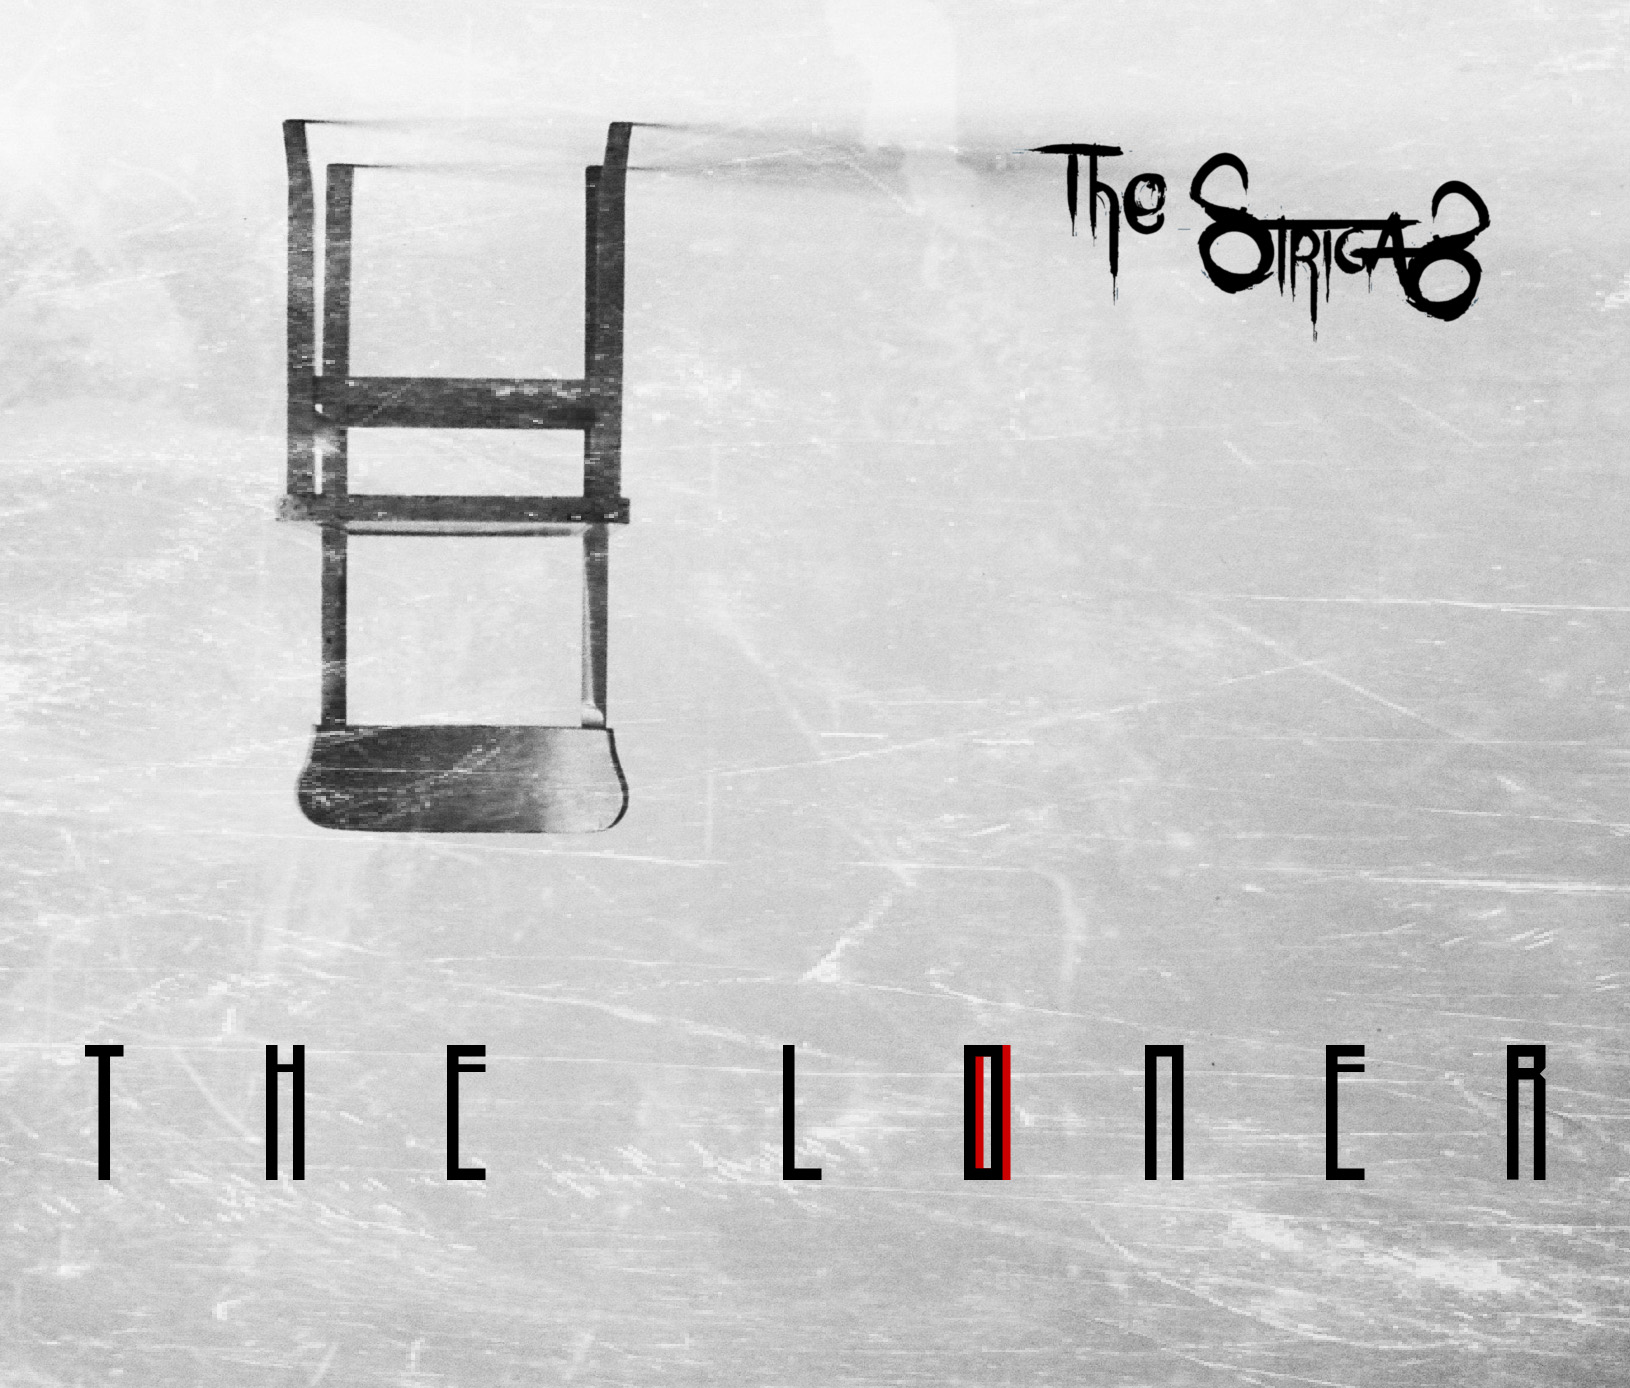  The Loner, il nuovo EP dei The Strigas   